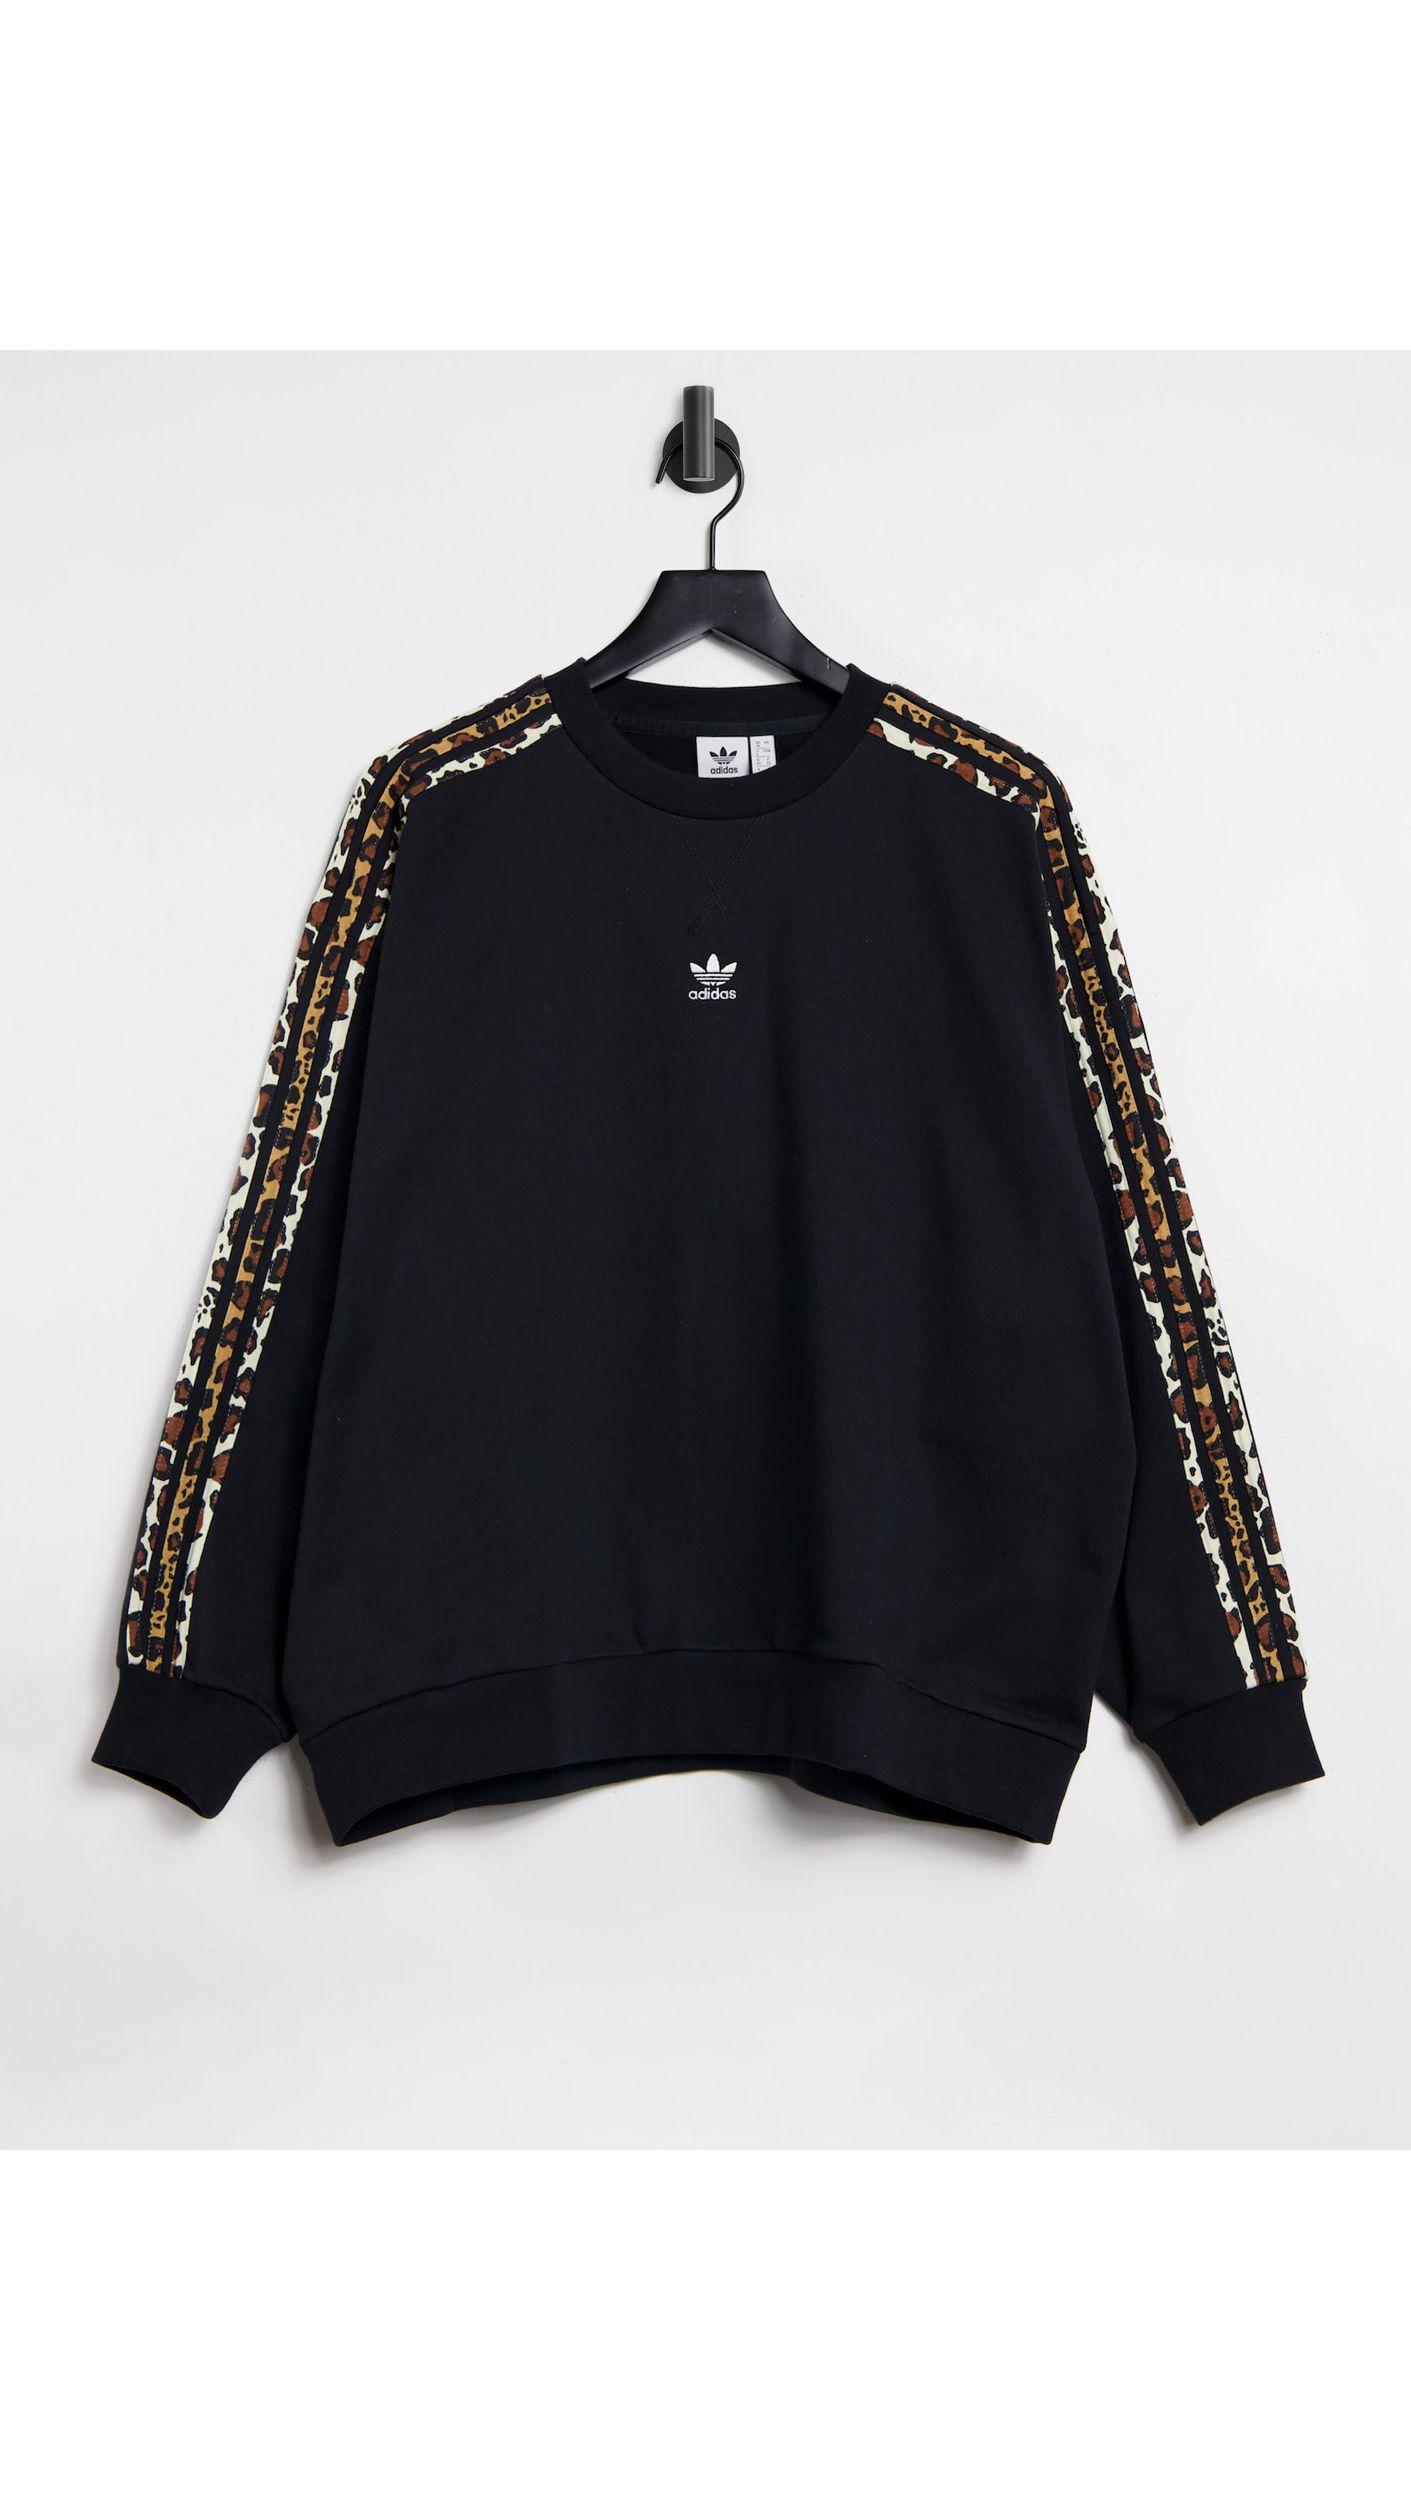 adidas Originals – leopard luxe – oversize-sweatshirt in Schwarz | Lyst DE